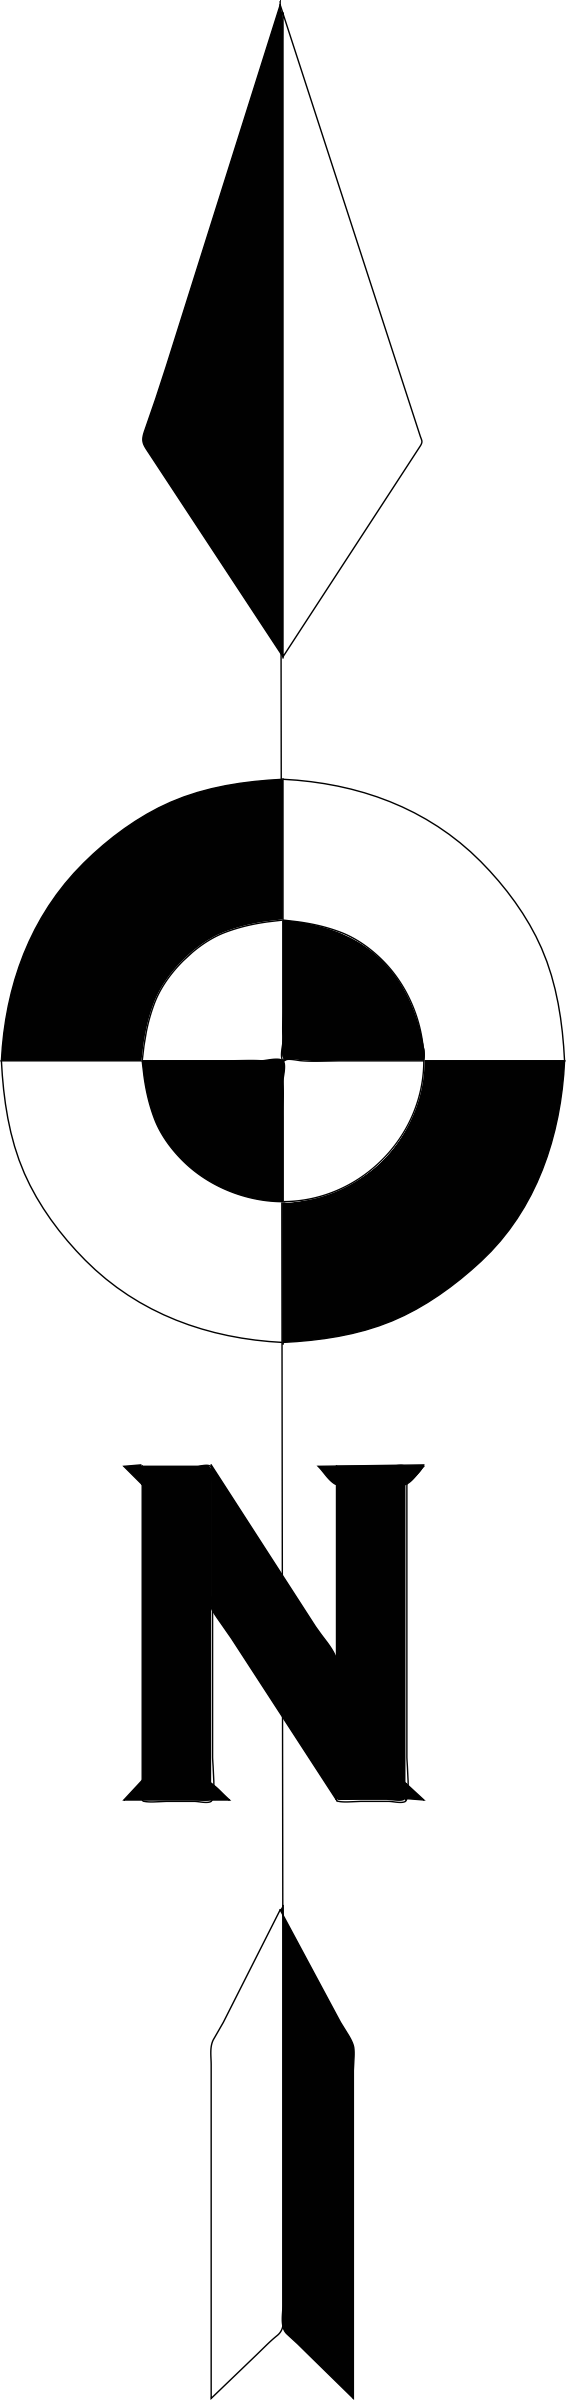 Arrow Symbol Monochrome Icons Archer PNG